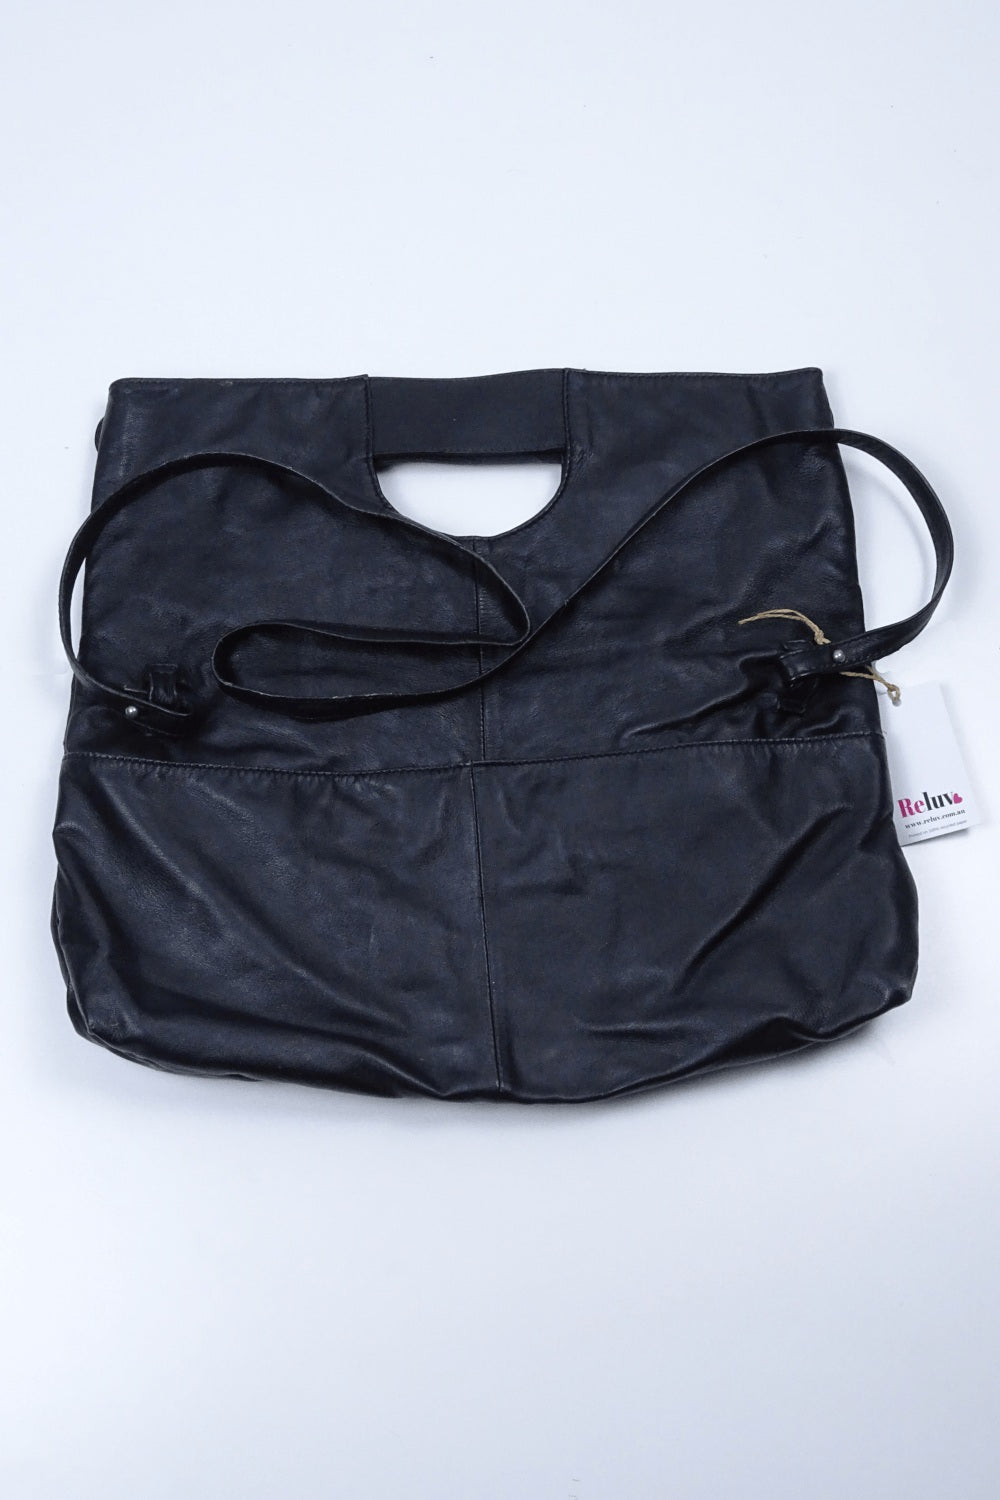 Gorman Supersoft Black Leather Bag